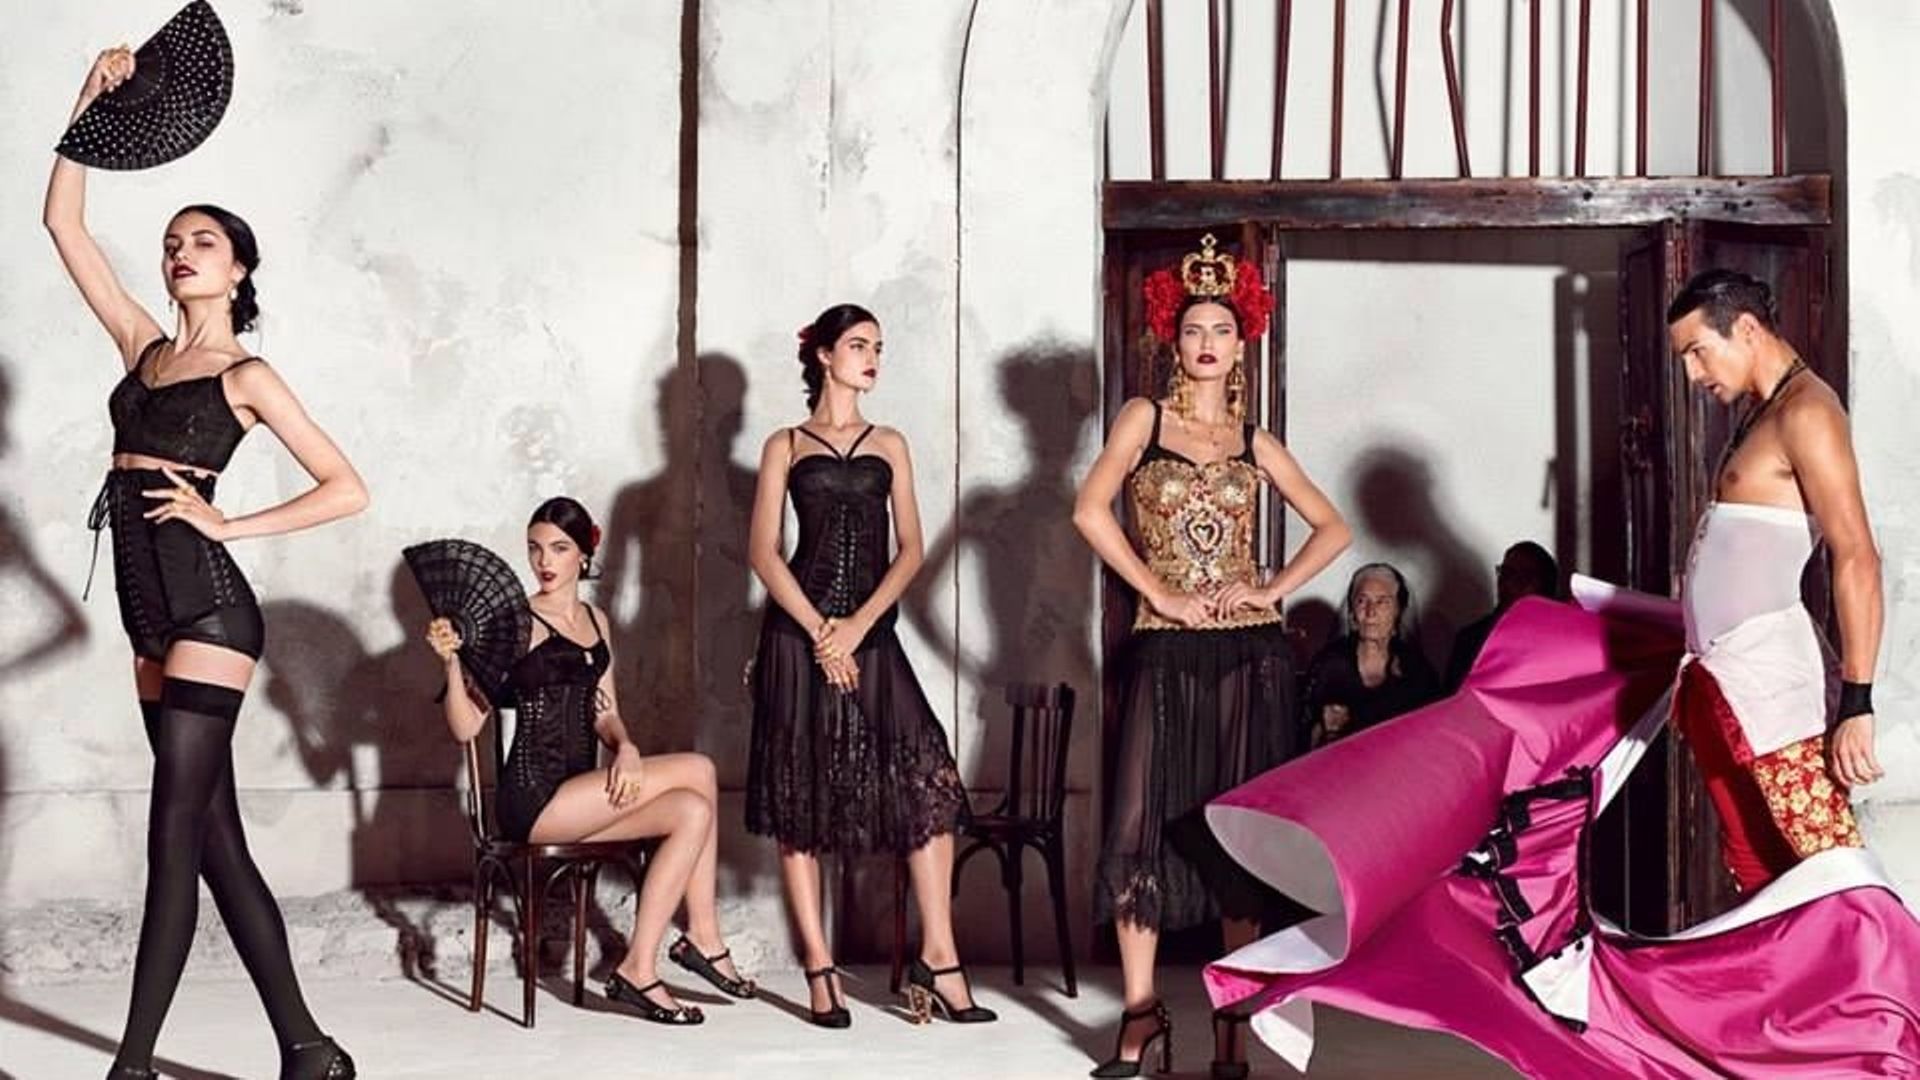 La maison italienne Dolce & Gabbana a présenté sur les réseaux sociaux sa campagne printemps-été 2015